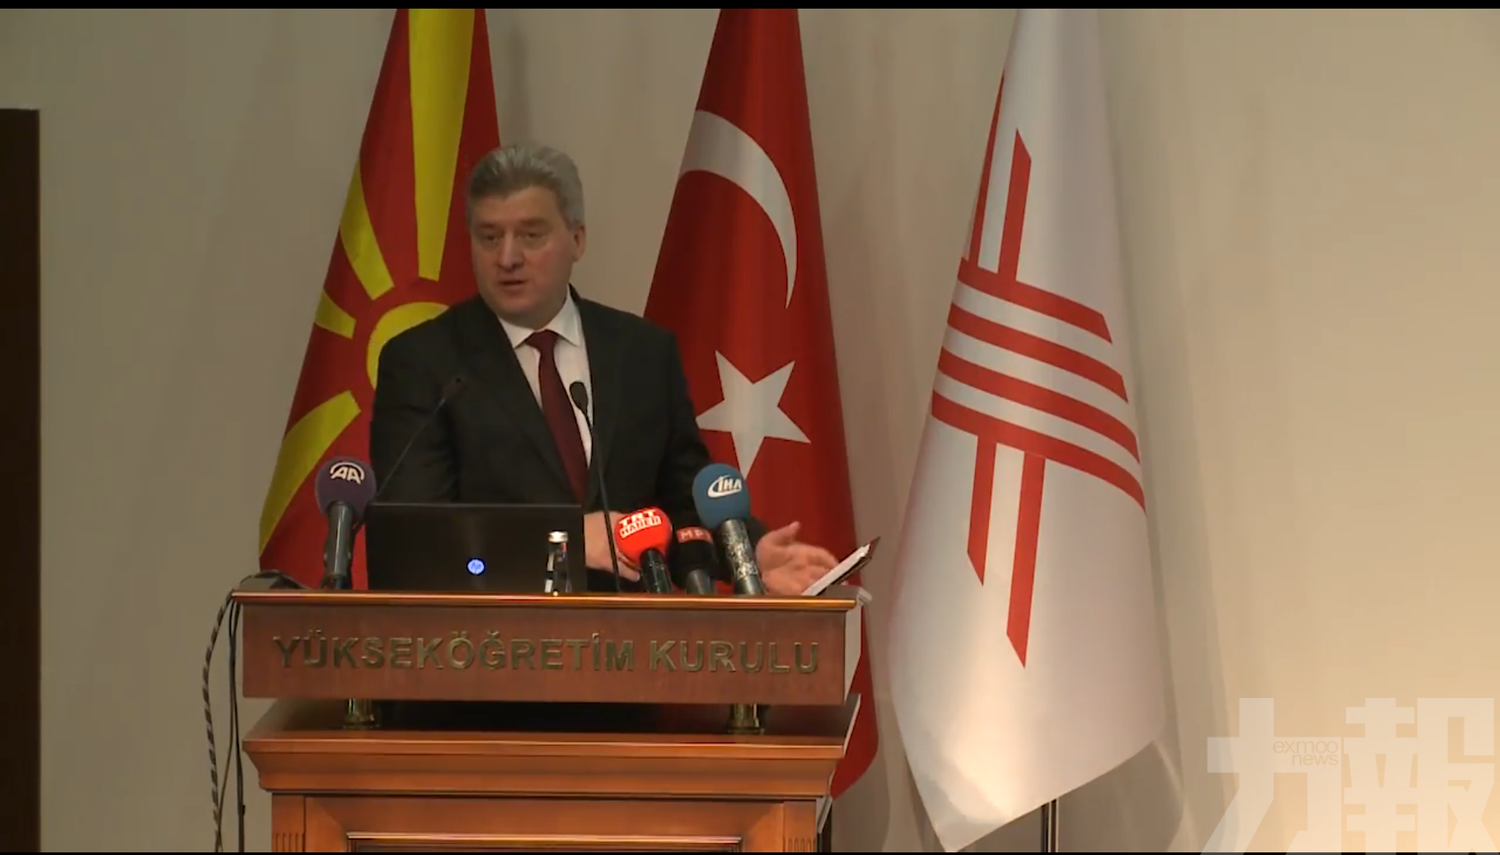 馬其頓總統拒簽更改國名協議